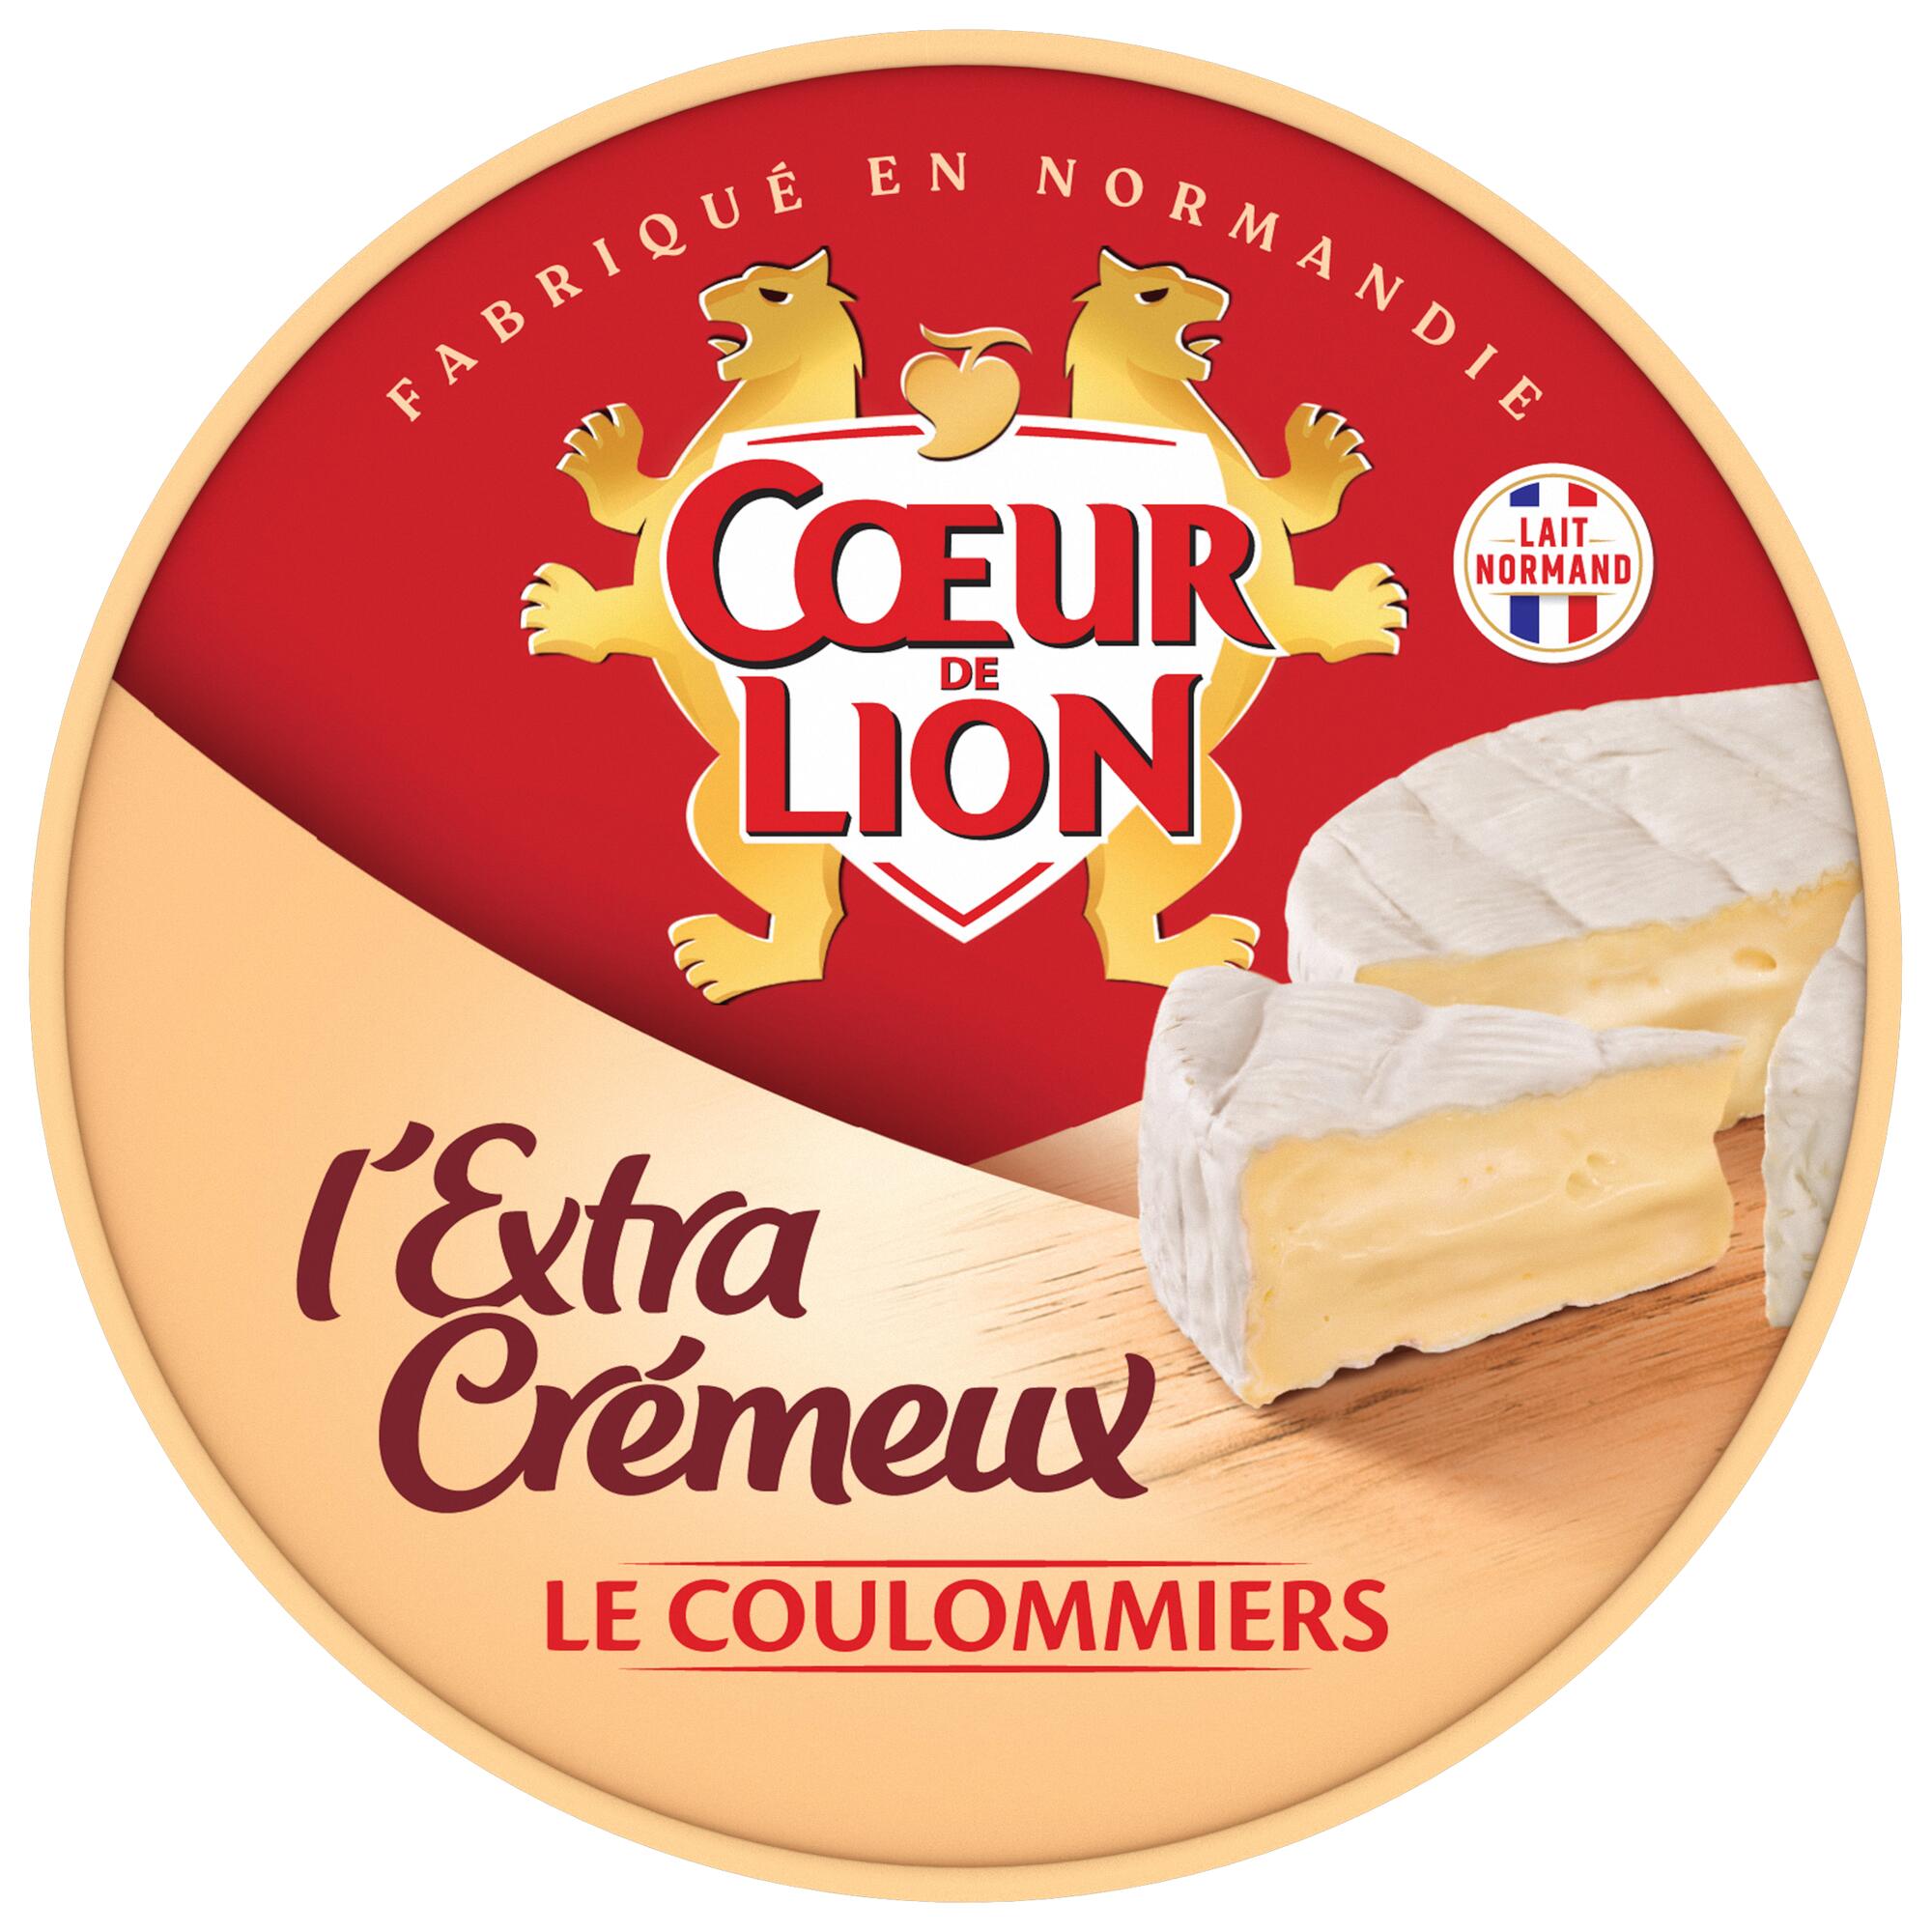 Cœur de Lion Coulommiers l'Extra-Crémeux